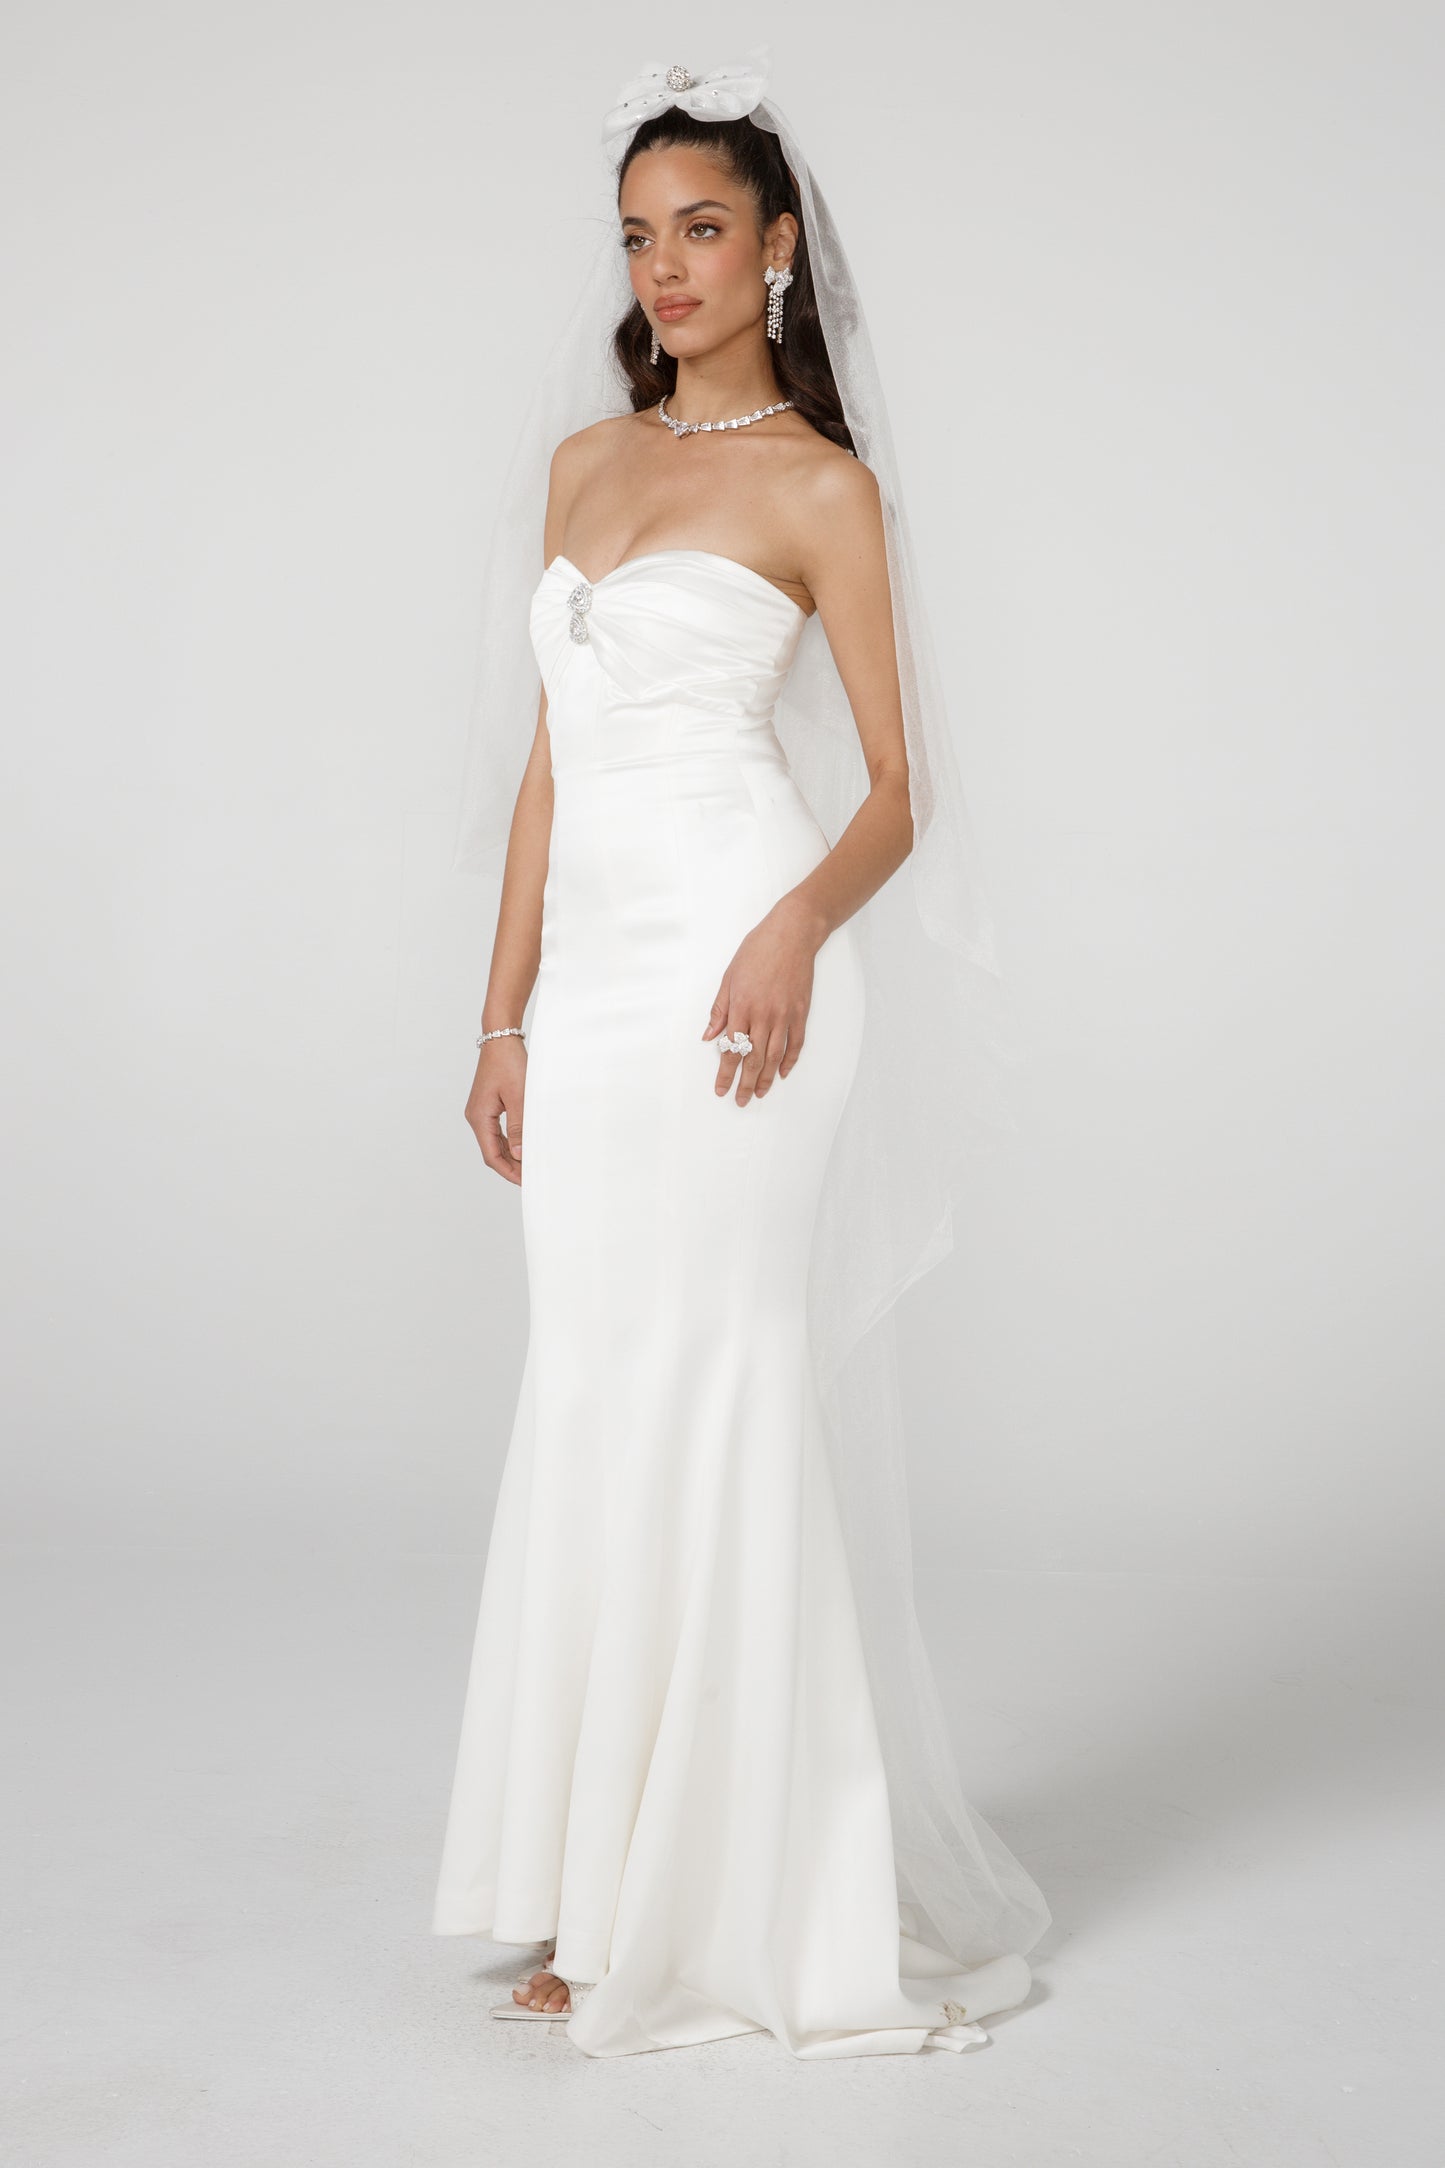 Aurora Satin Dress (White)